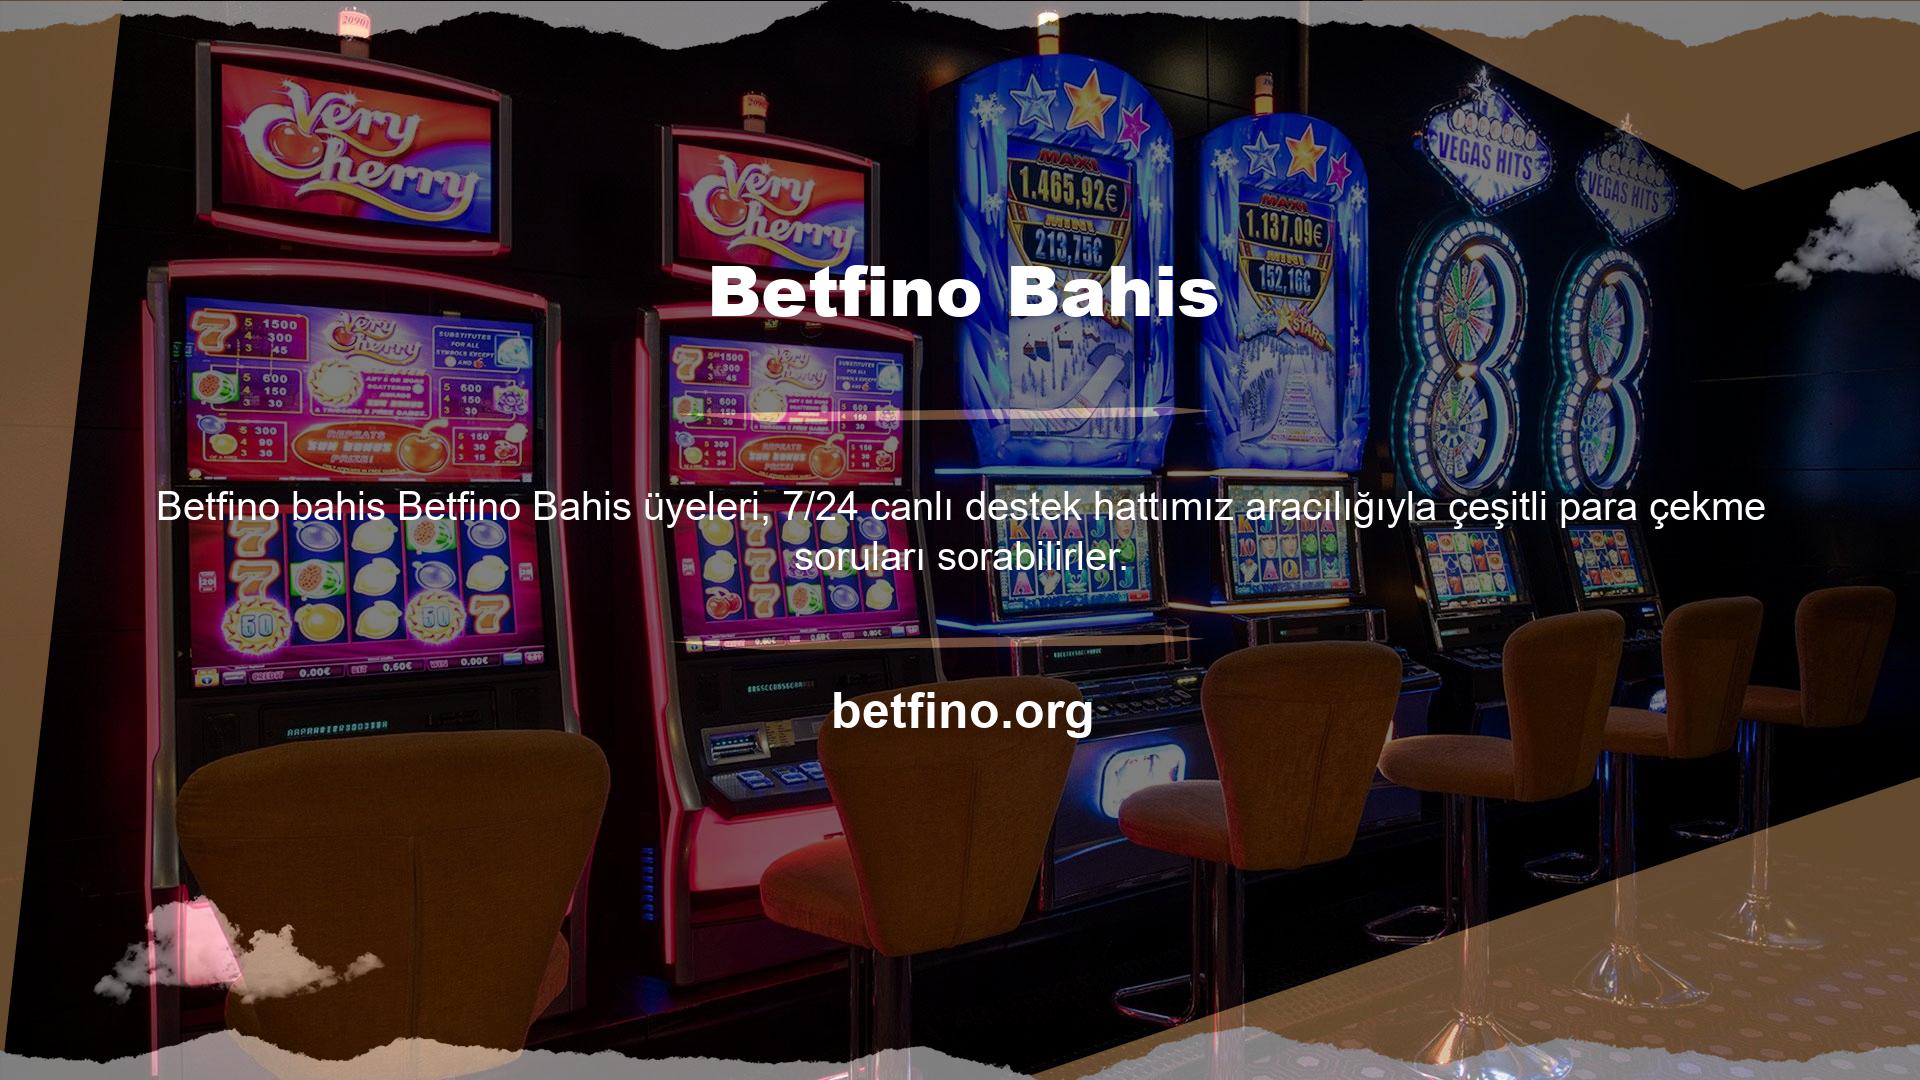 Betfino casino sitesi, kullanıcılara güvenilir ve rahat para çekme hizmetleri sunmakta ve sürekli gelişen ve büyüyen bir platform haline gelmiştir